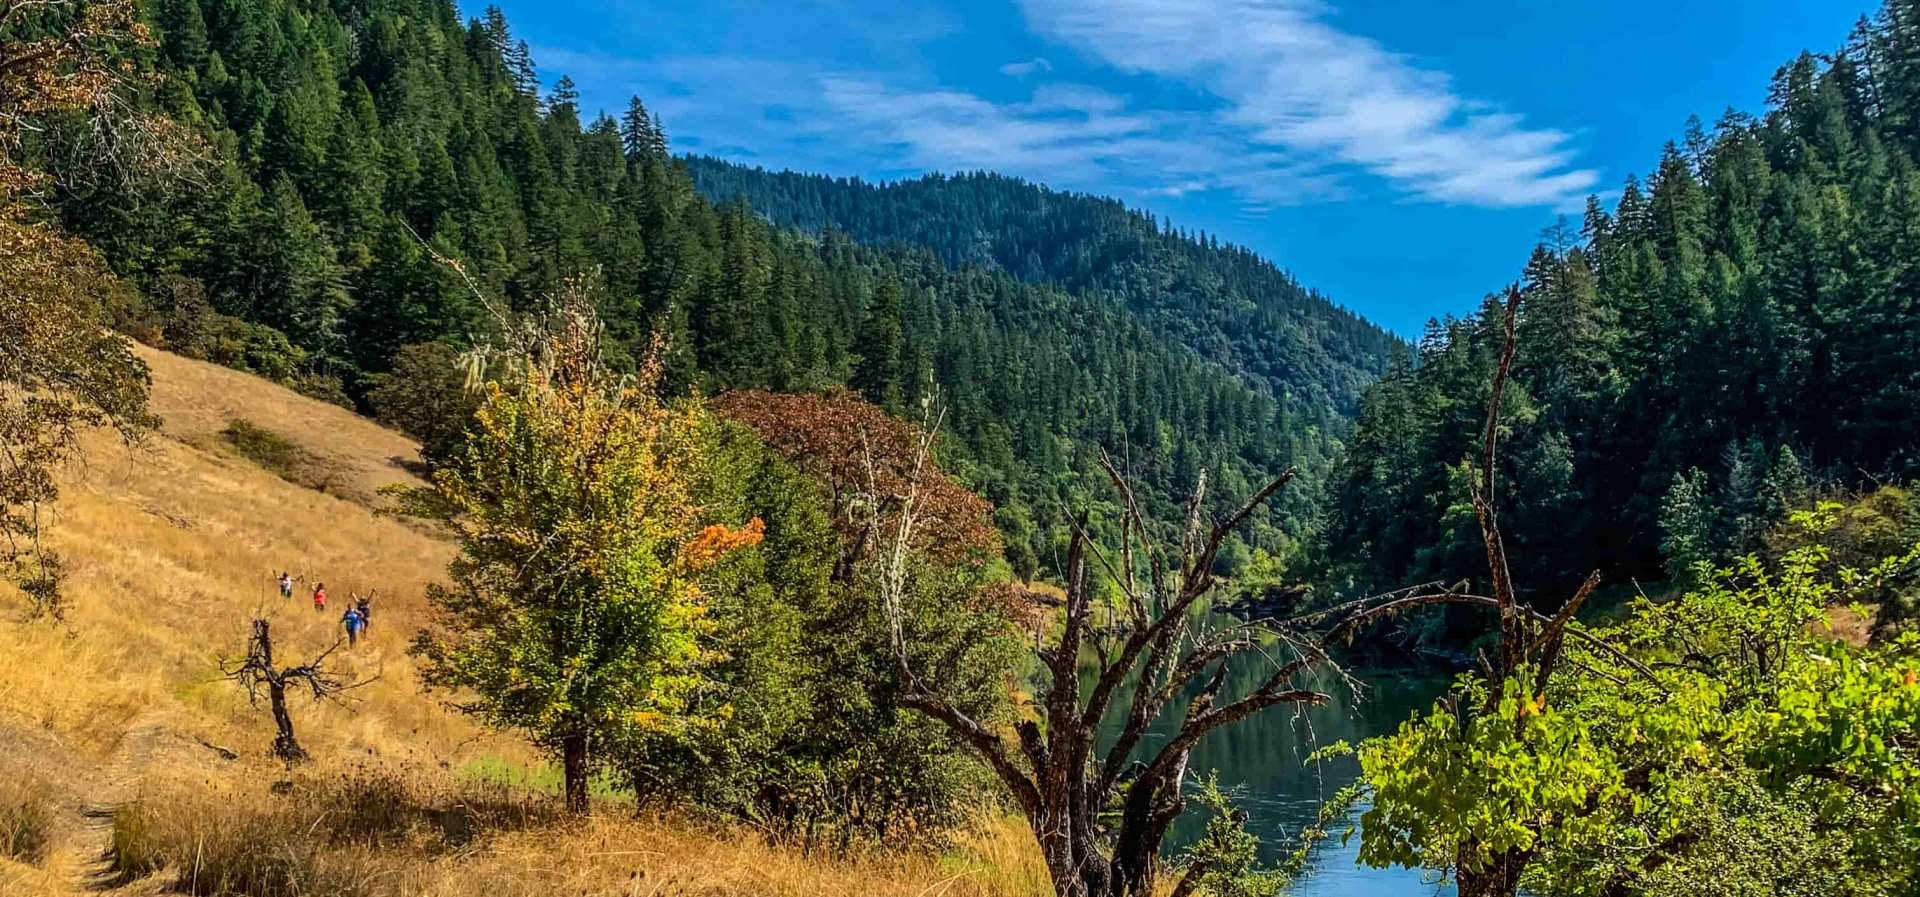 Rogue River - Travel Oregon